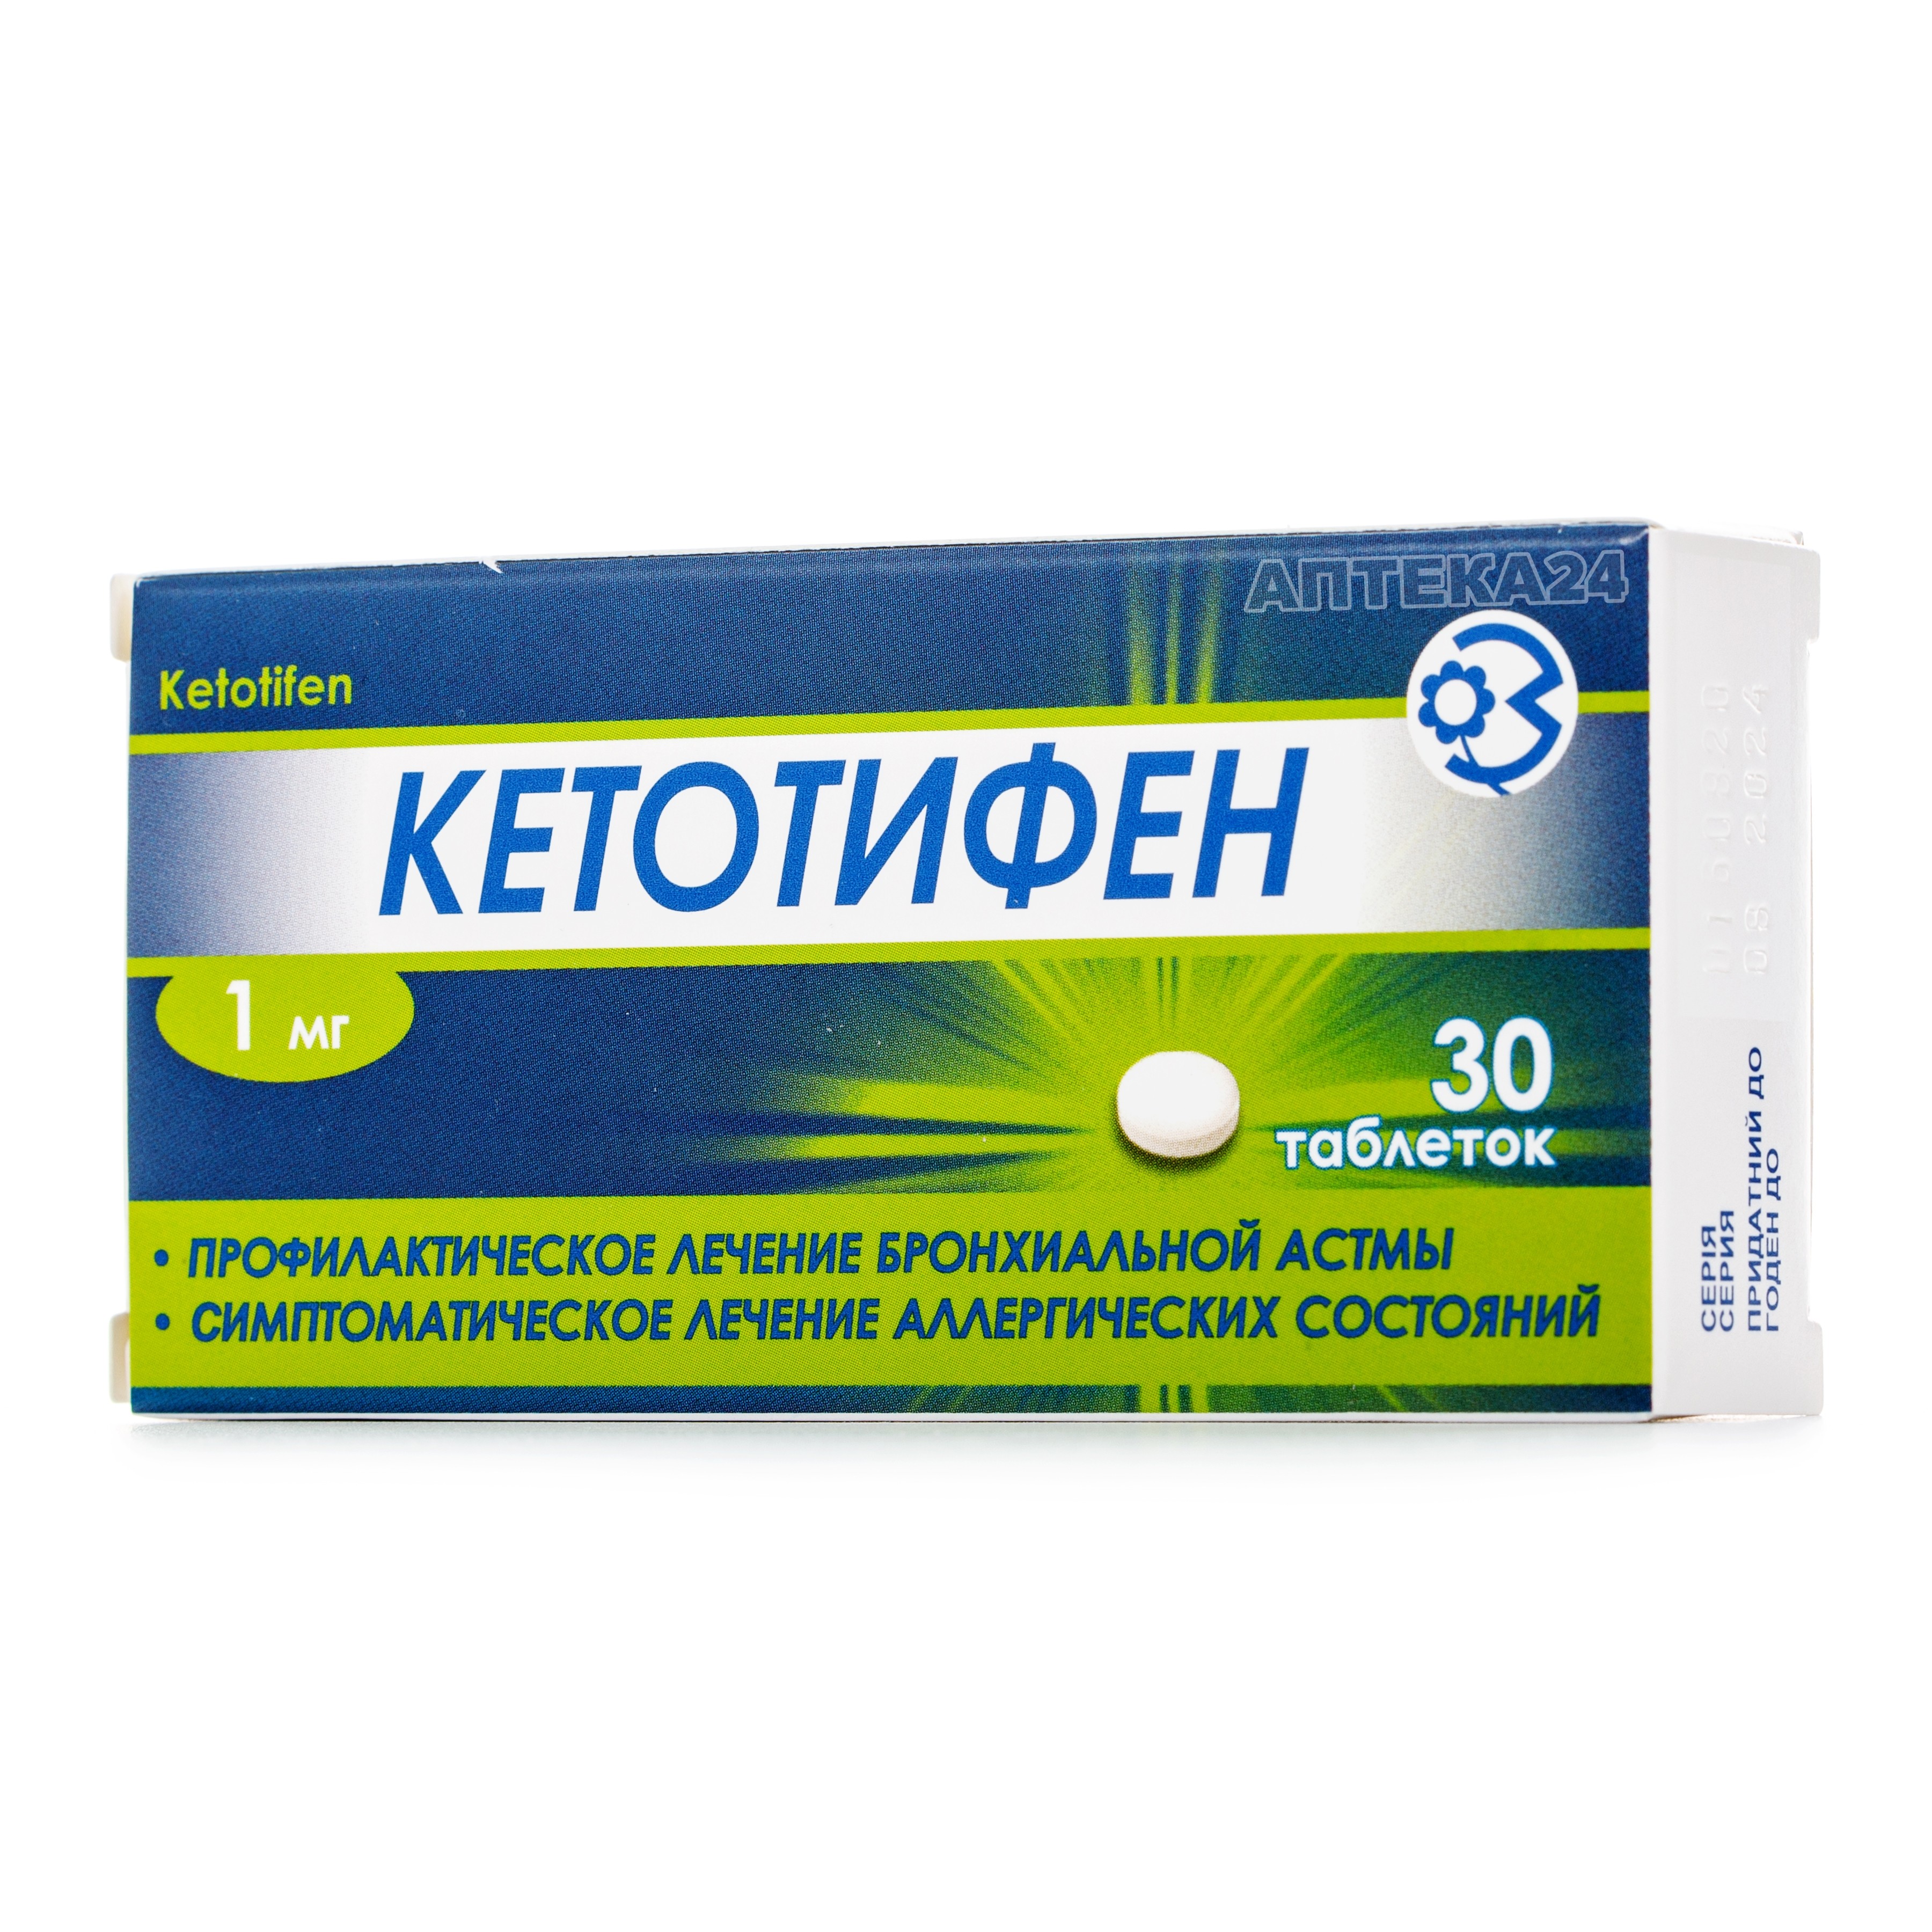 Чесні відгуки про Кетотифен таблетки від алергії по 1 мг, 30 шт .